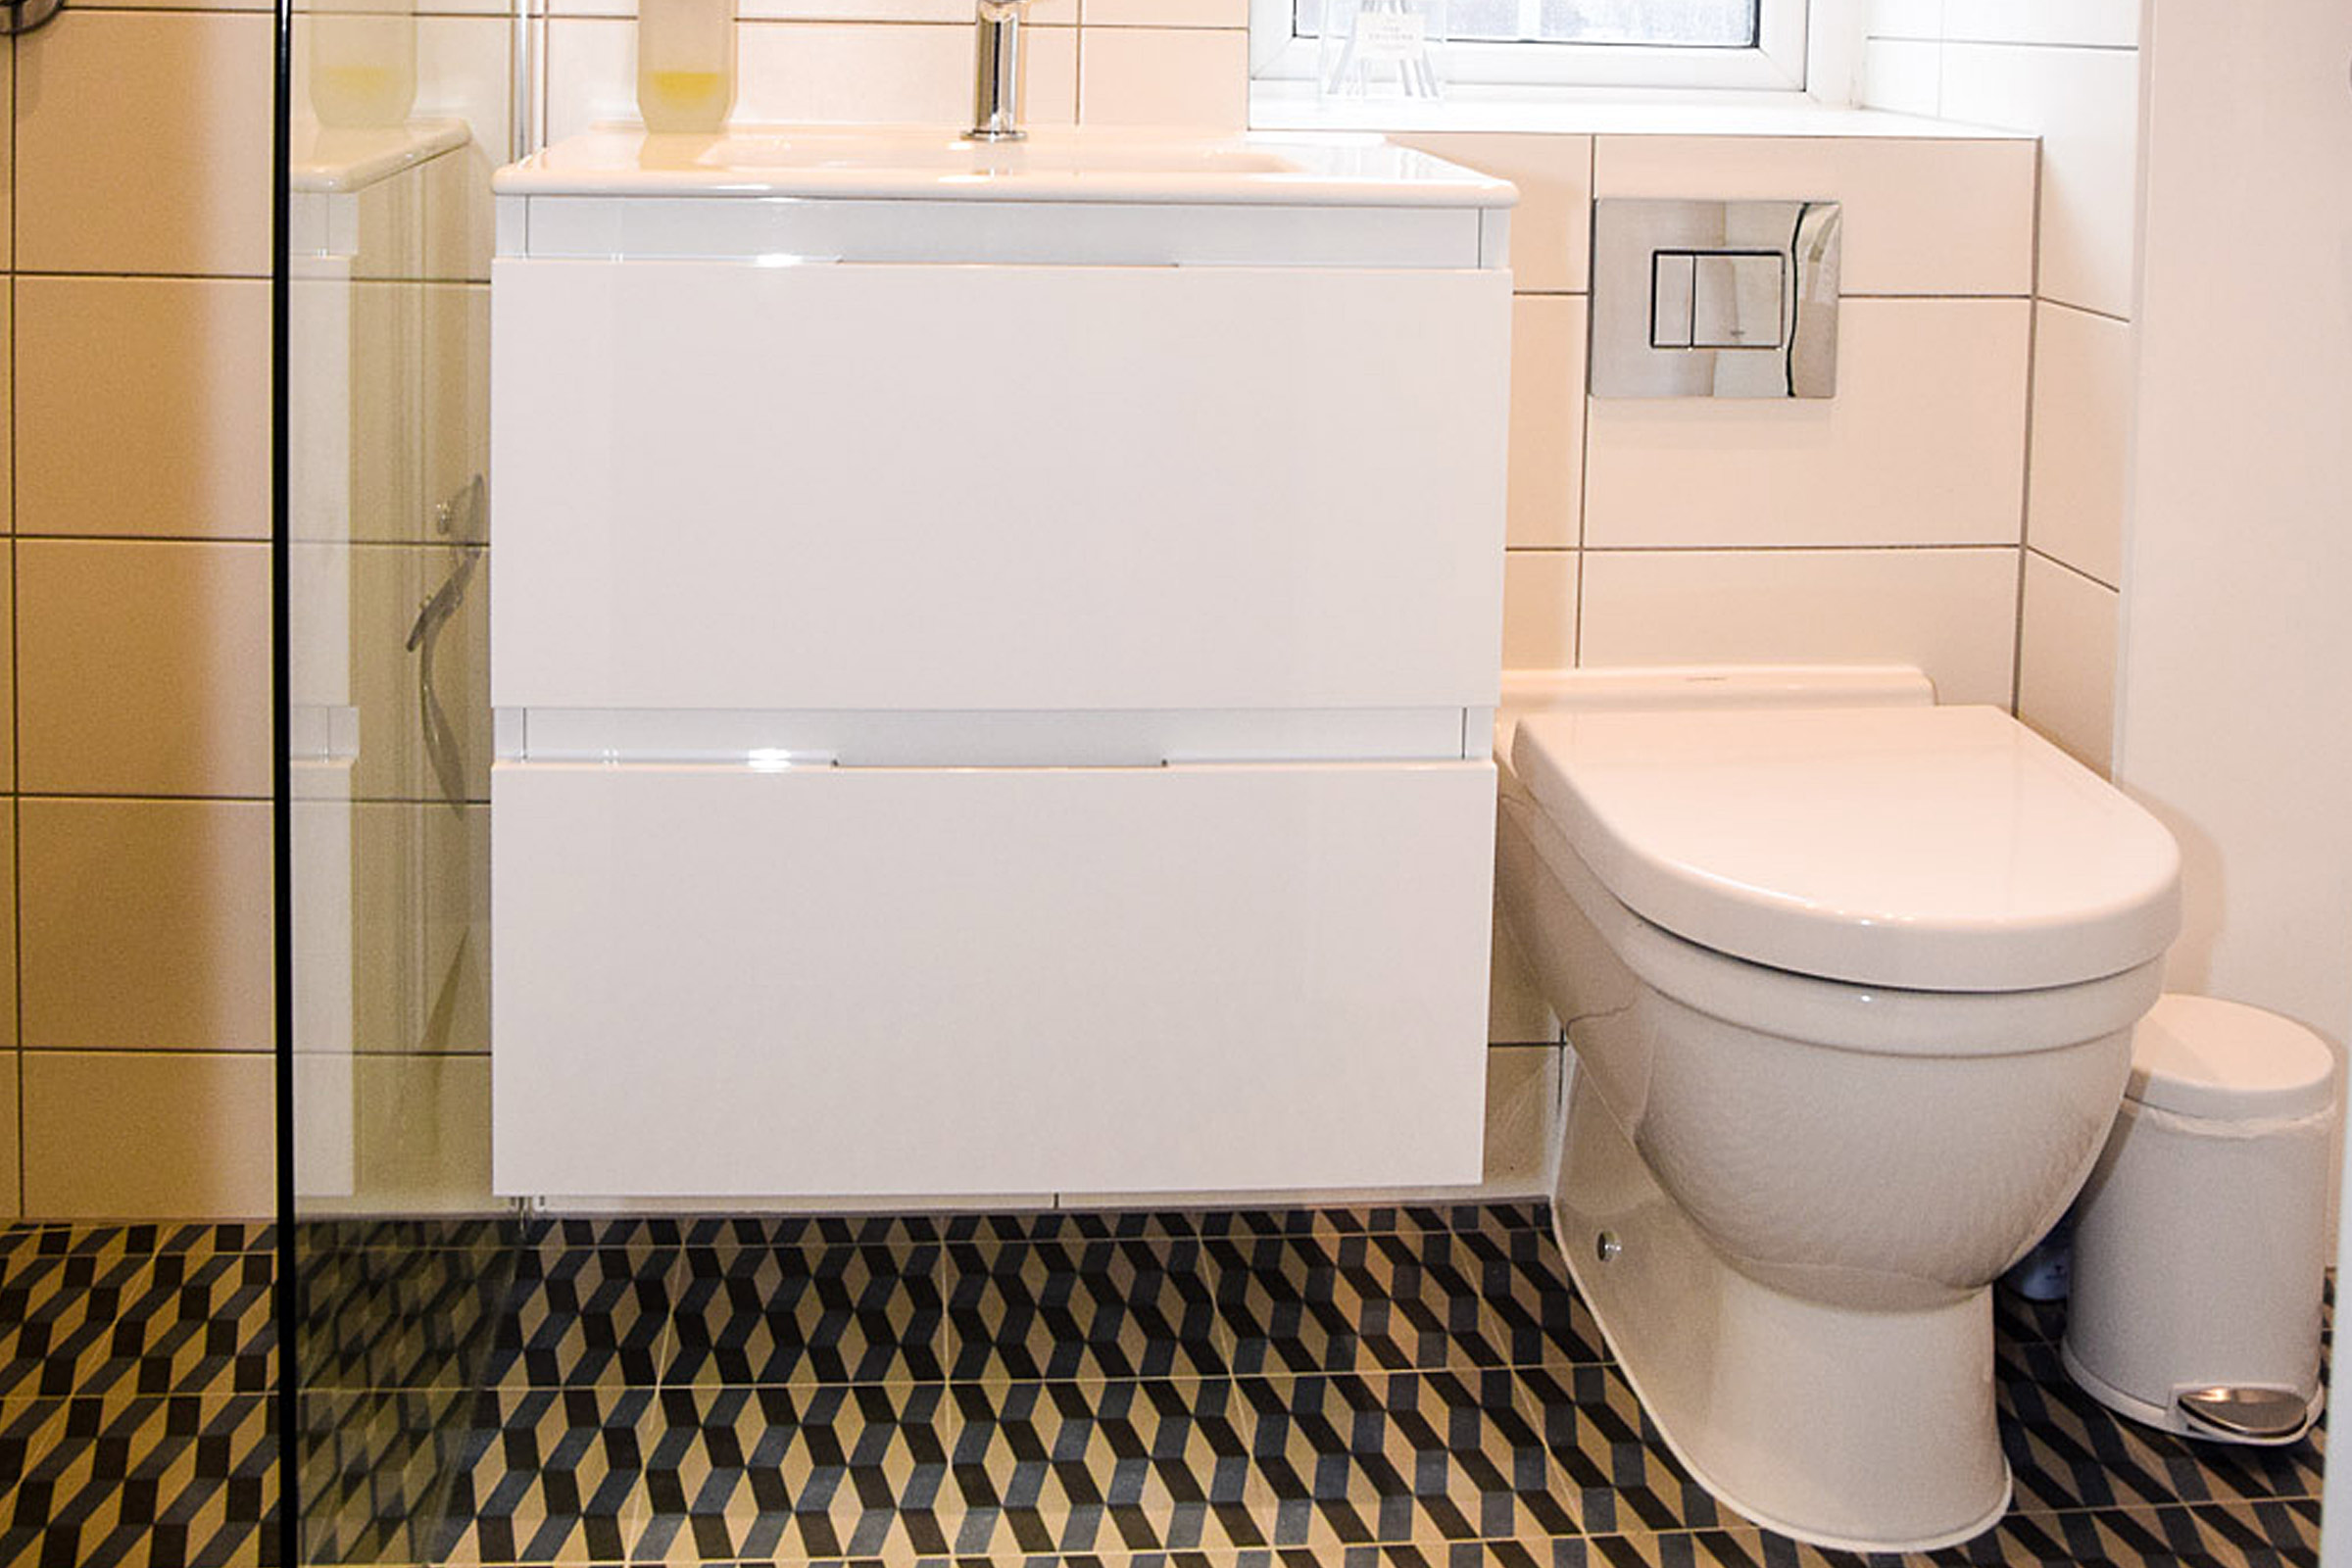 Bathroom refurbishment in London by Inventive Designs